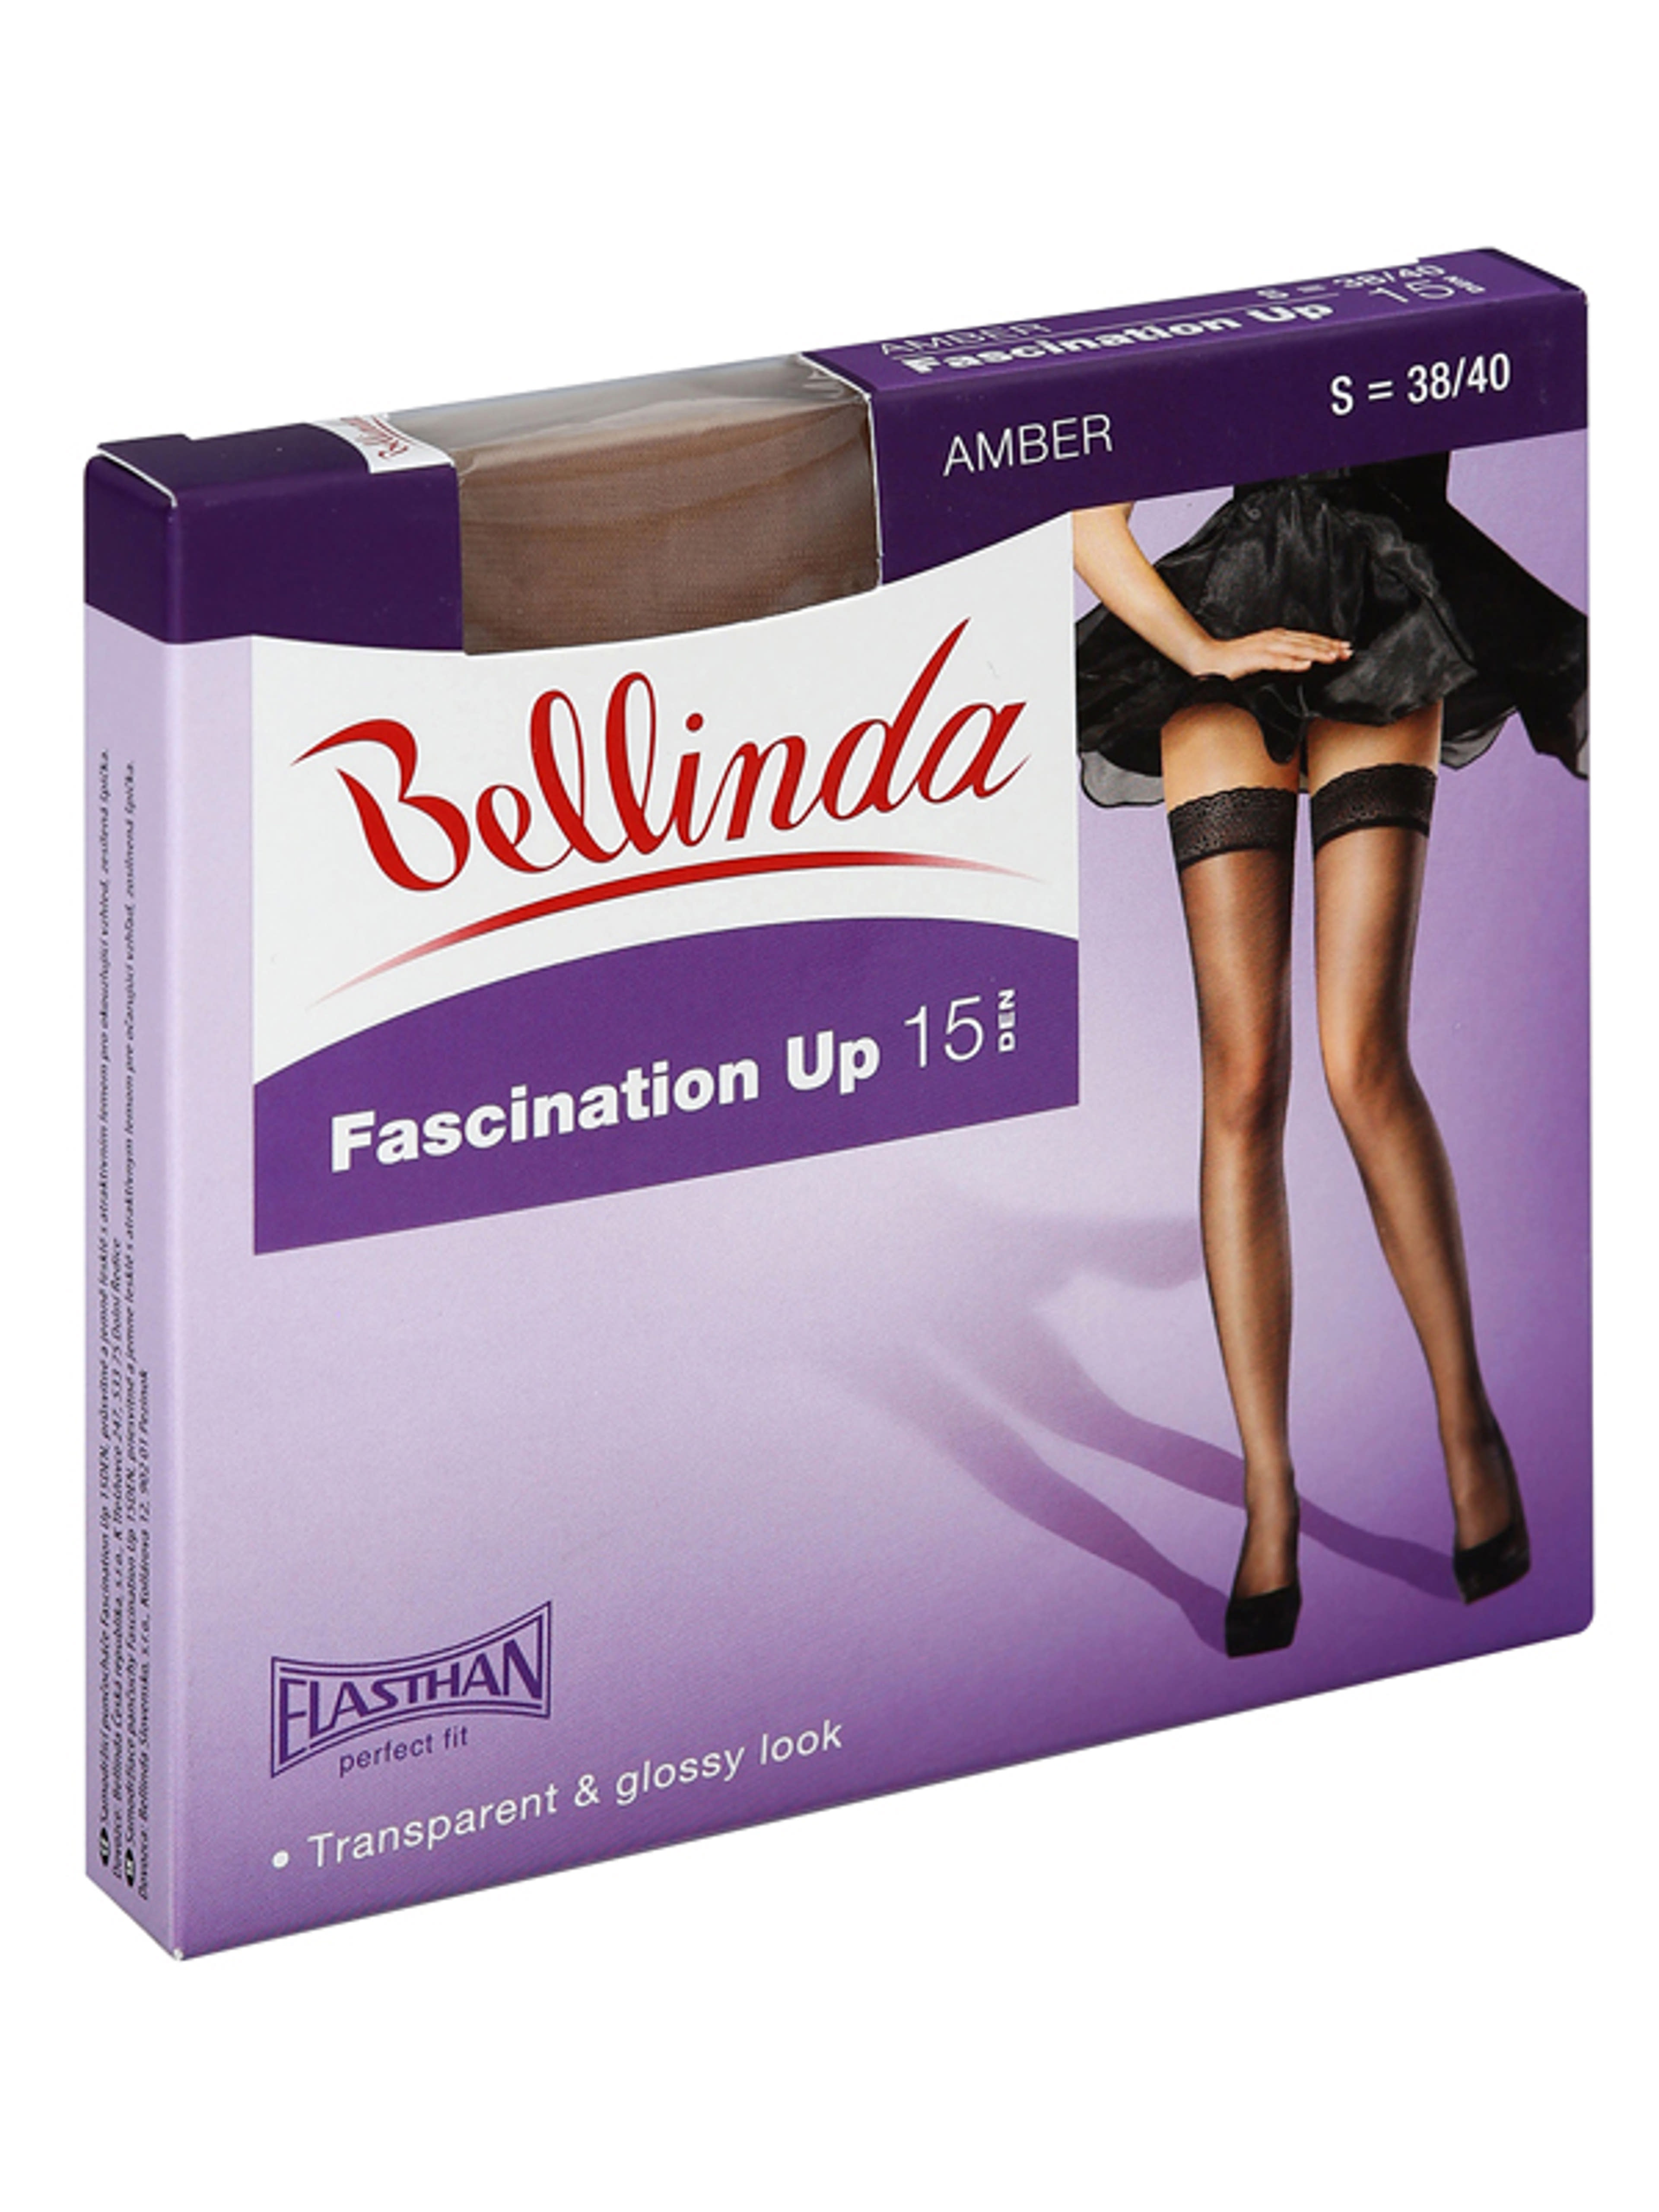 Bellinda Fascination 15 Den Amber S Combfix - 1 db